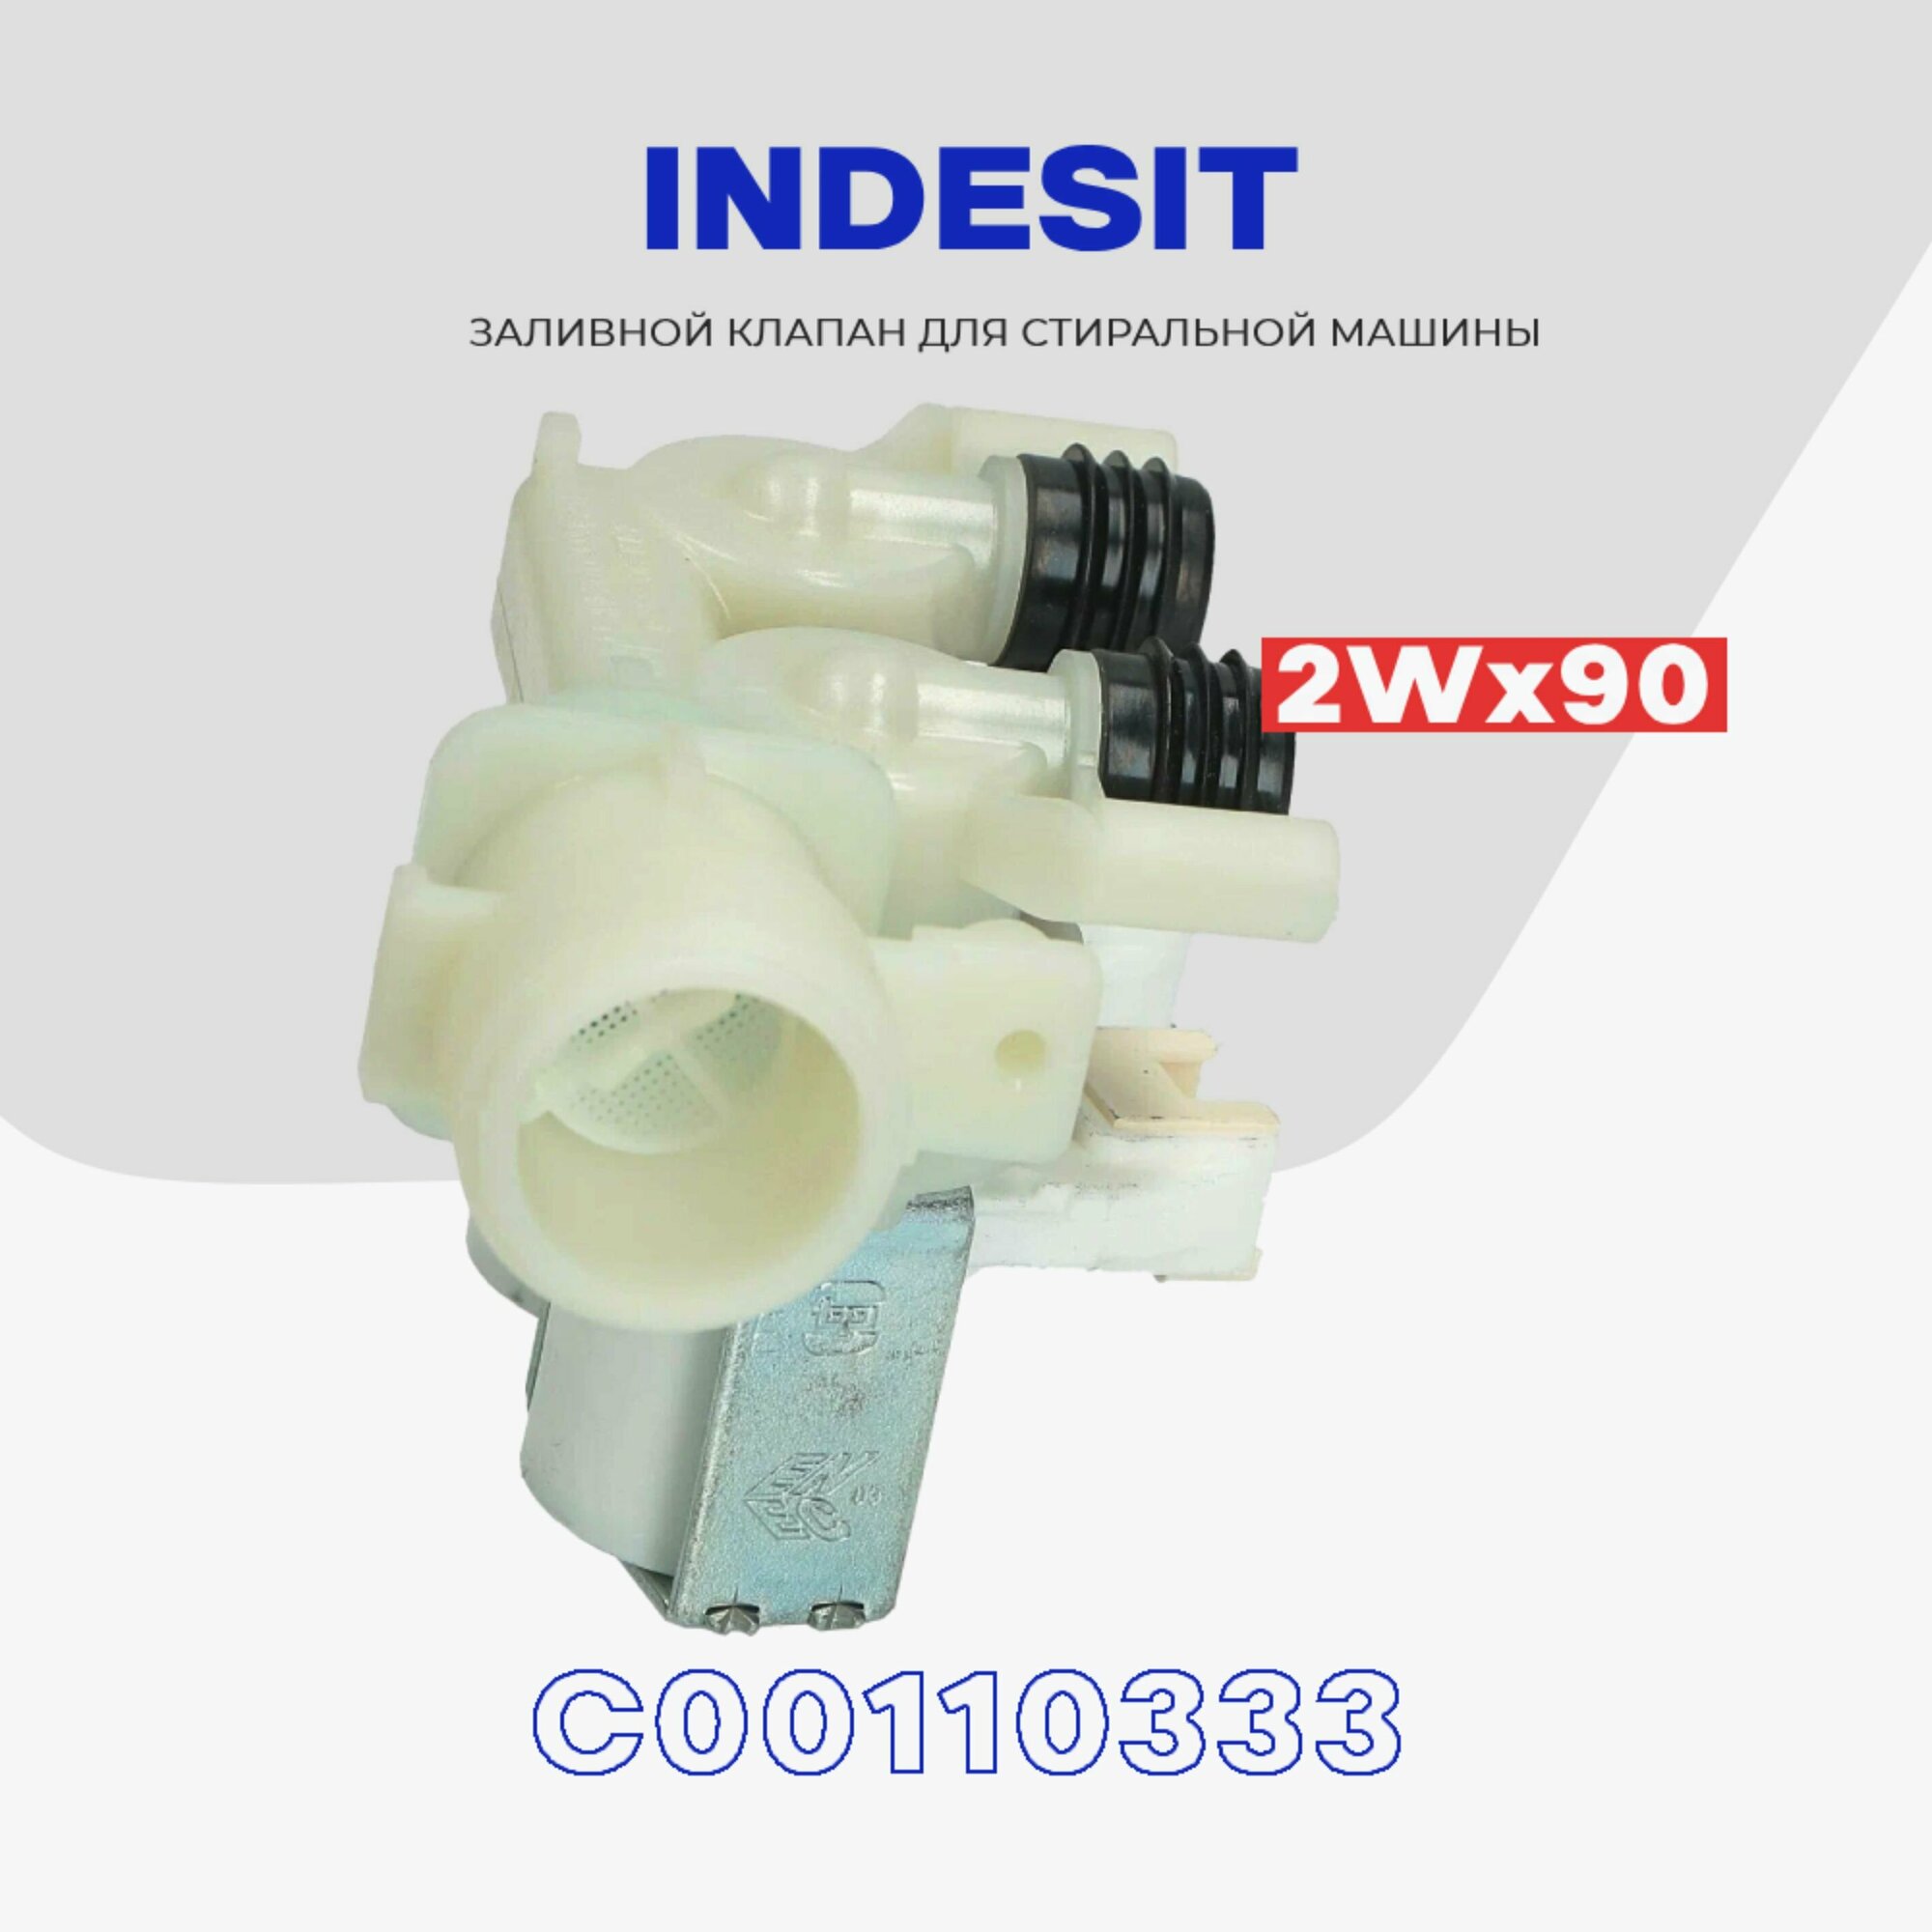 Клапан заливной для стиральной машины INDESIT C00110333 2Wx90 / Клапан подачи воды Индезит впускной 220V